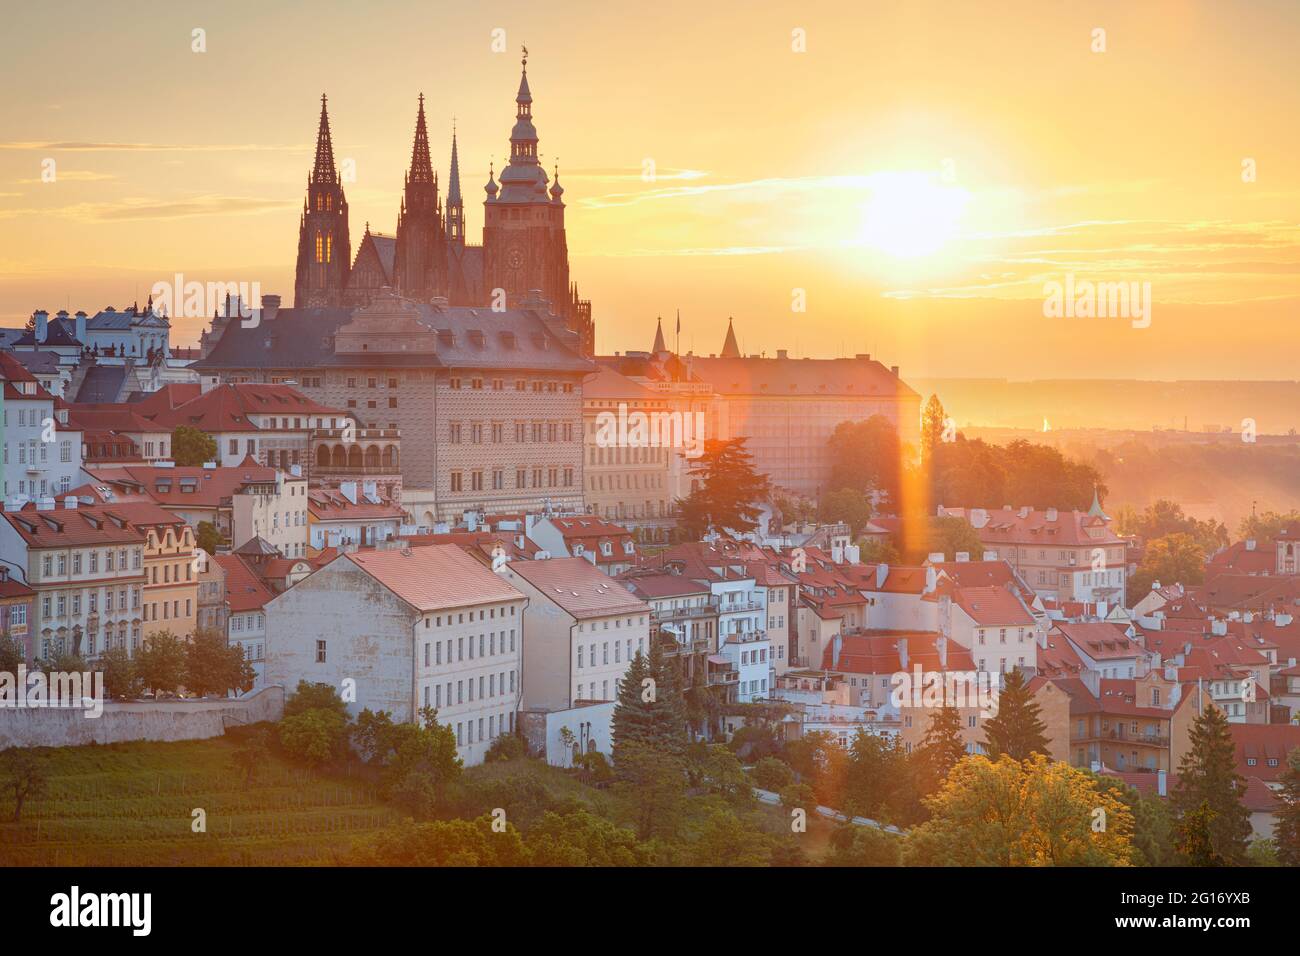 Castello di Praga. Immagine aerea del paesaggio urbano di Praga, capitale della Repubblica Ceca con la Cattedrale di San Vito e il quartiere del Castello durante l'alba estiva. Foto Stock